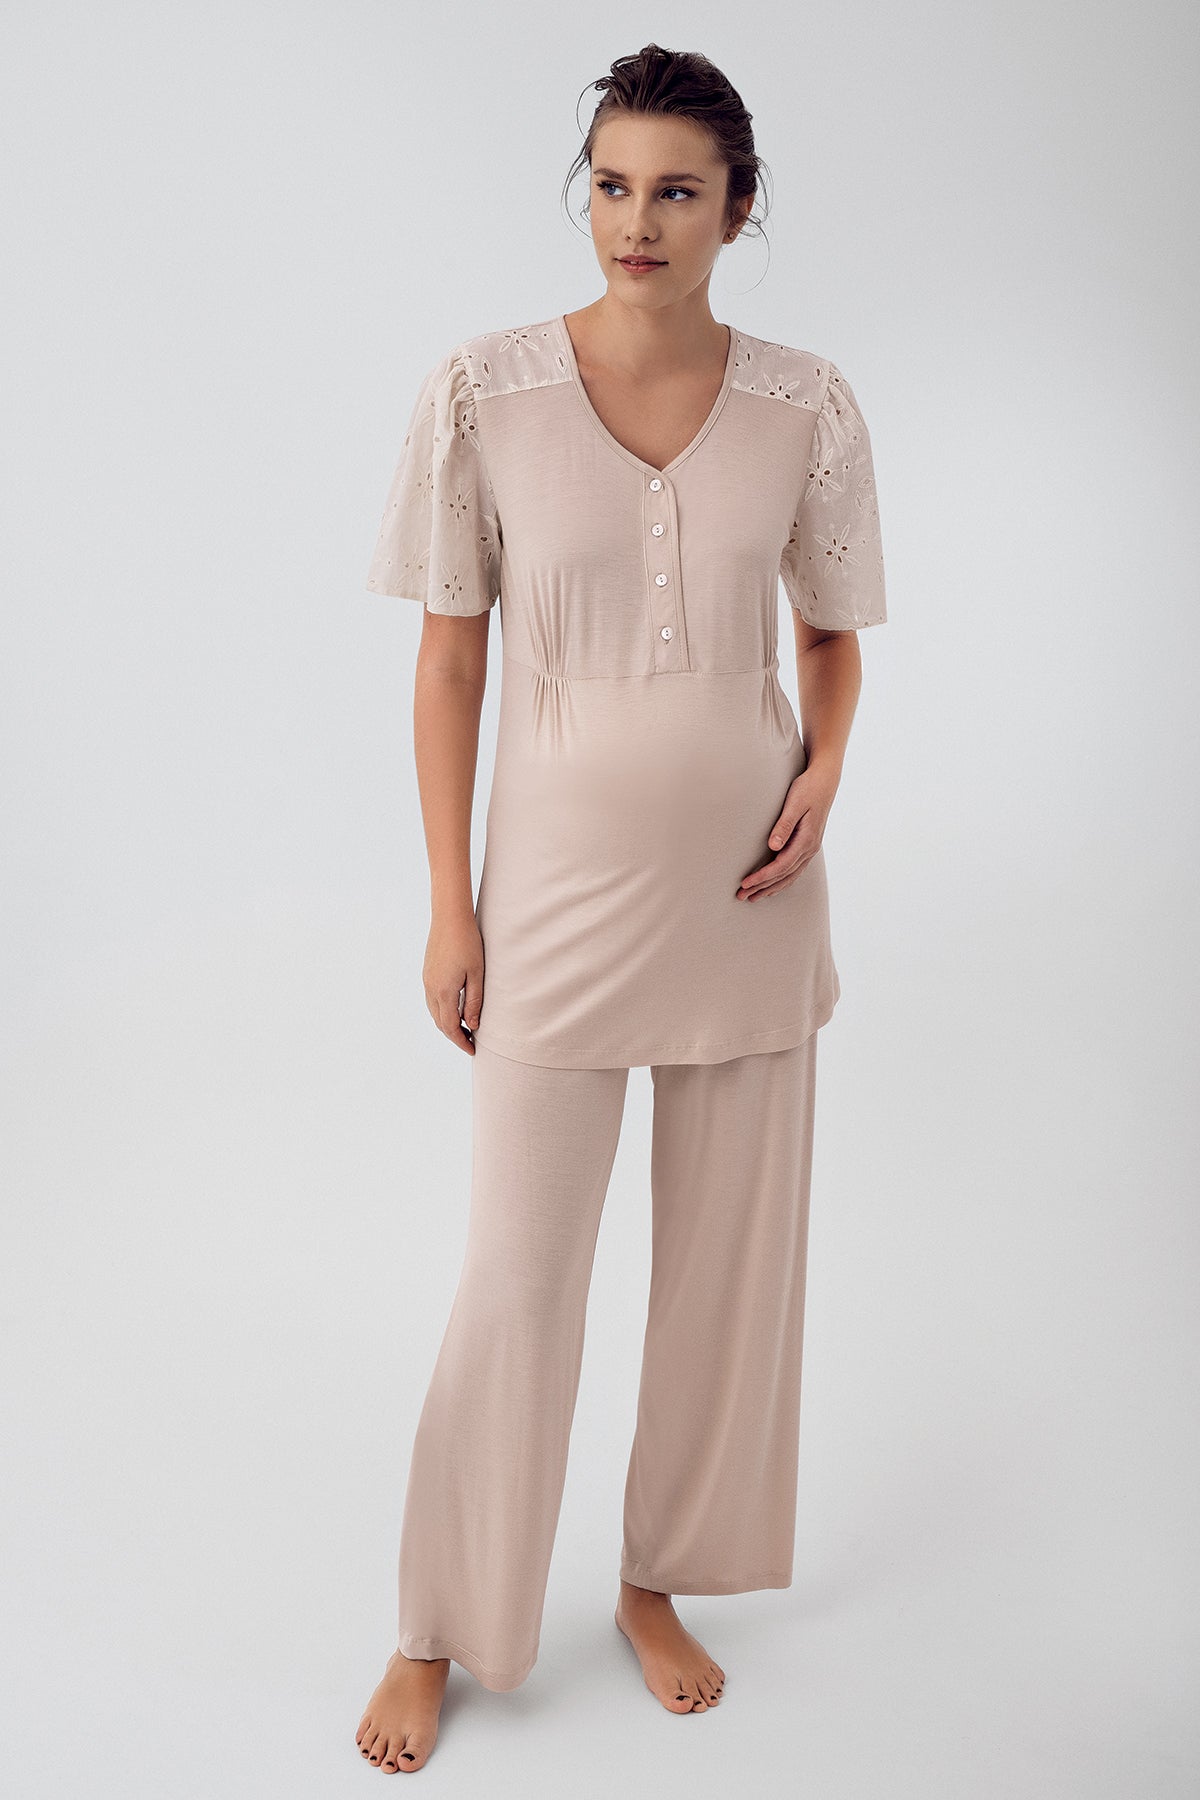 Shopymommy 16206 Lace Sleeve Maternity & Nursing Pajamas Beige